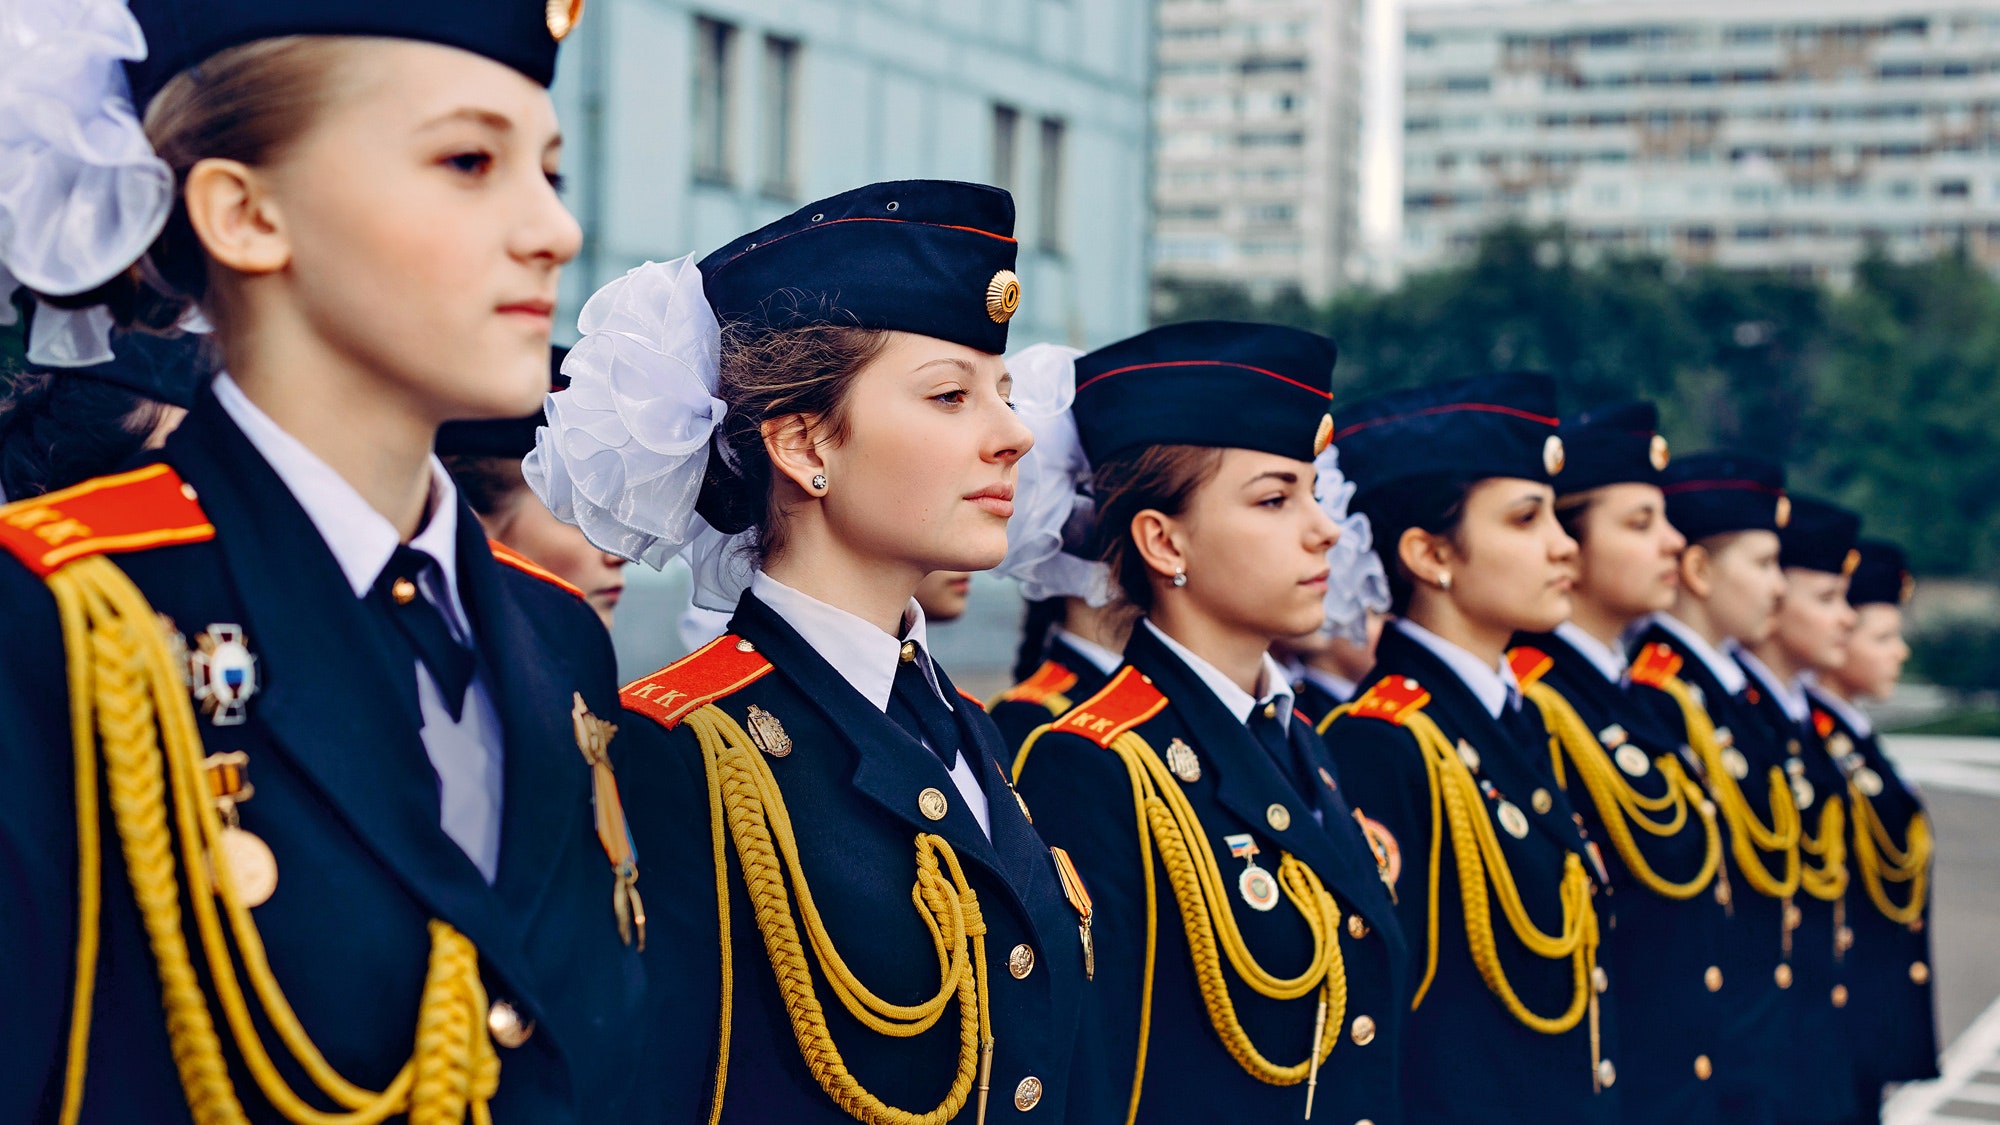 Репортаж из кадетского корпуса как живут девочки в военной форме